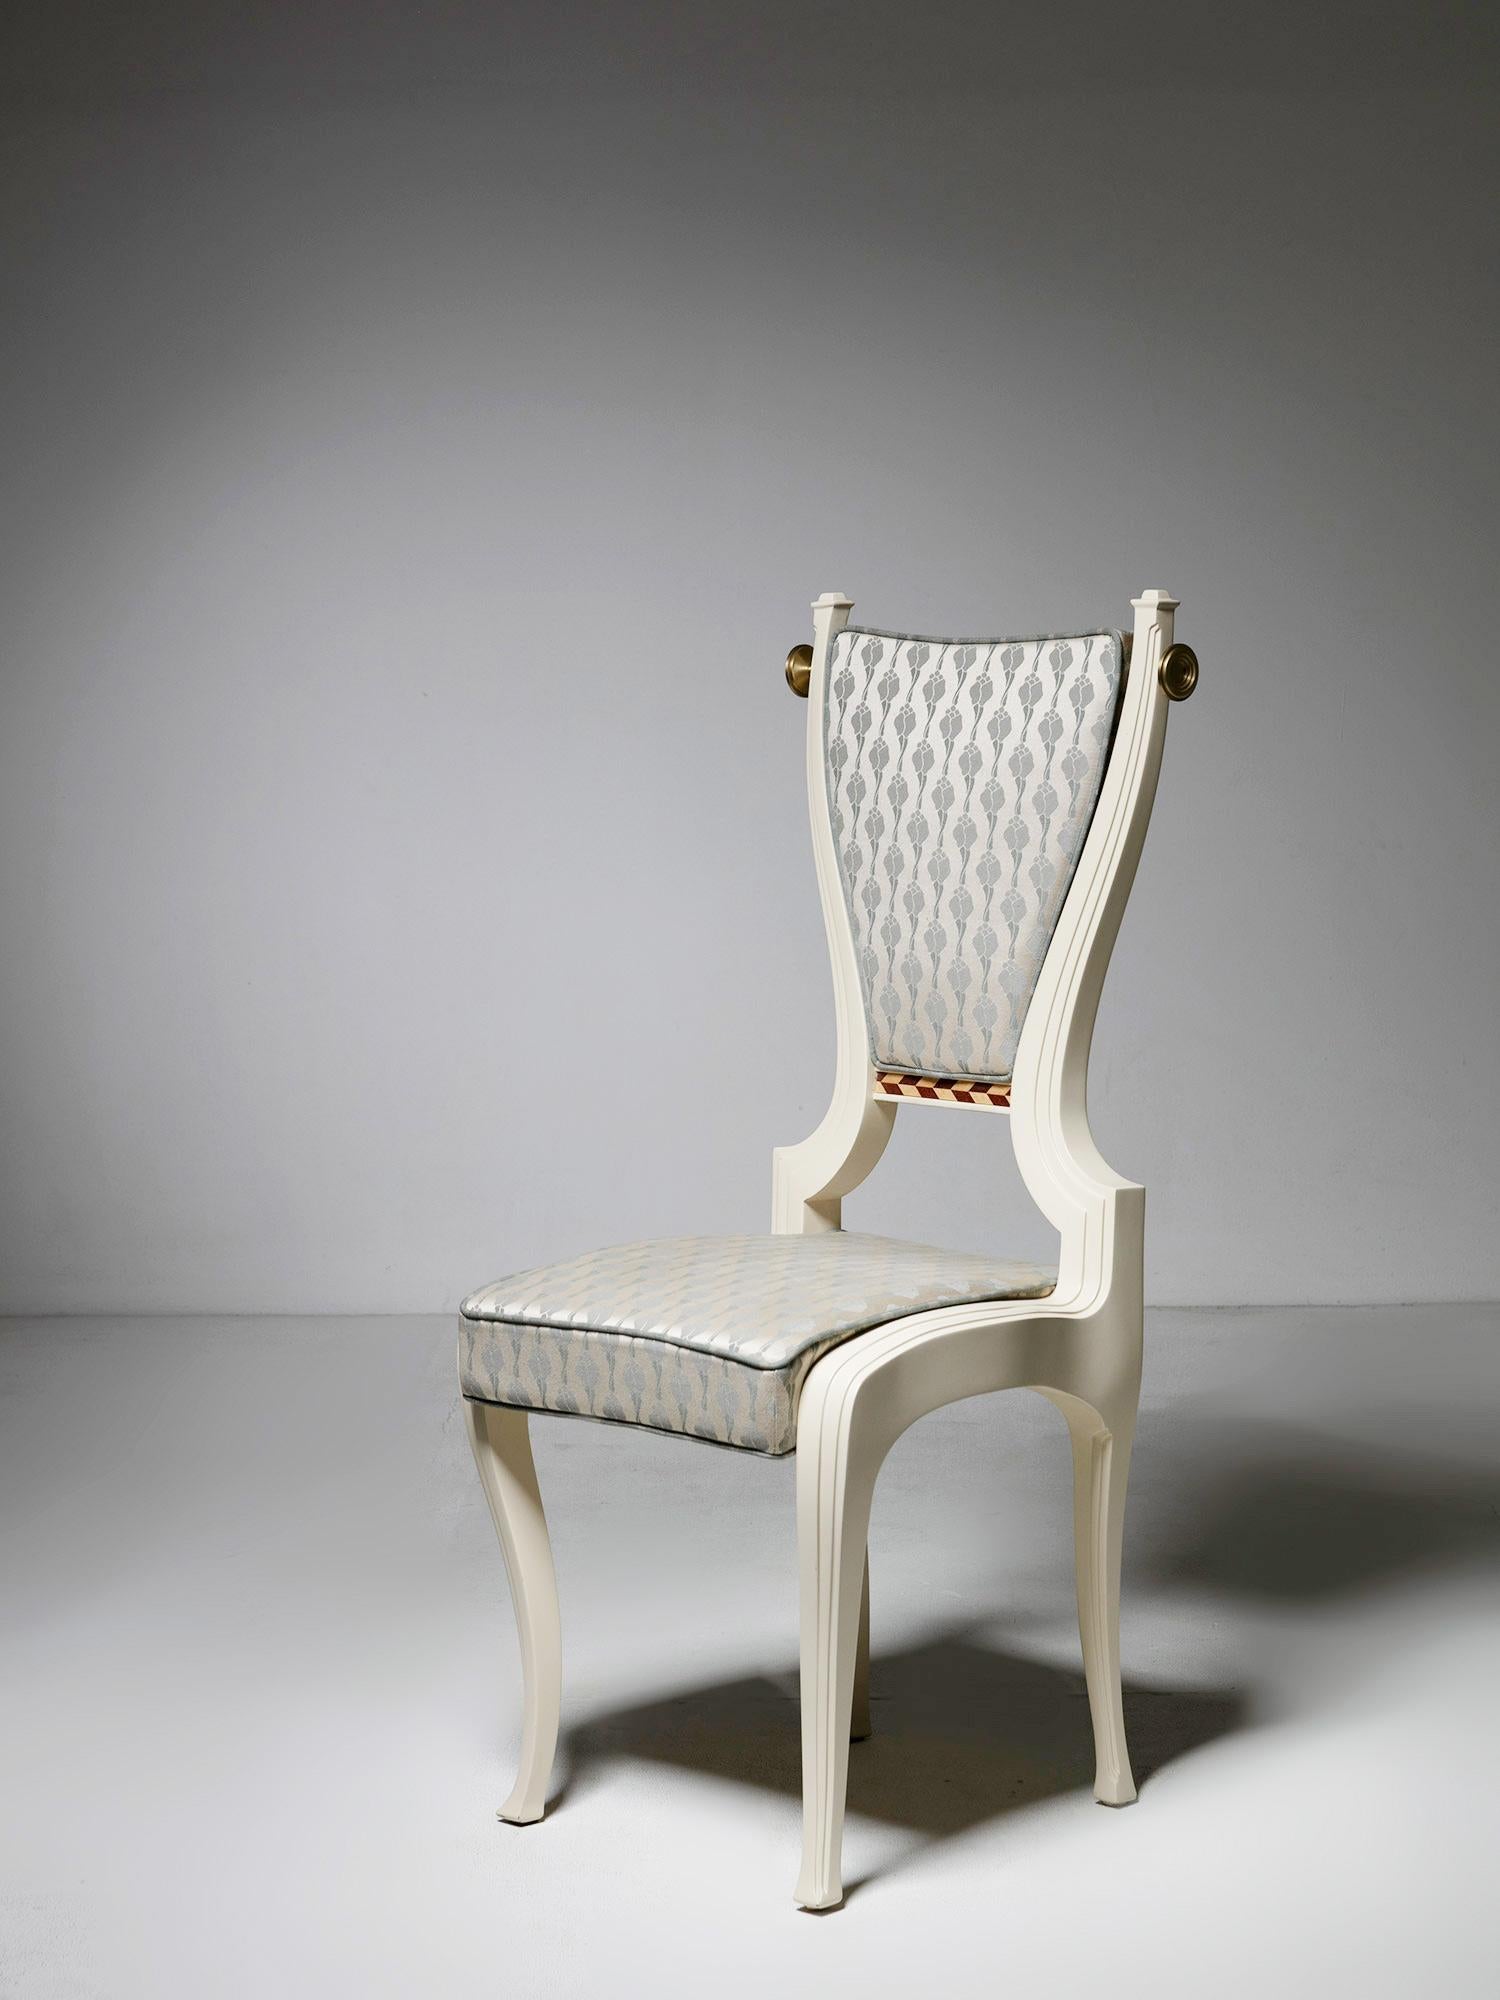 Rare chaise conçue par Paolo Portoghesi pour B&B Italia.
Fait partie de la collection 